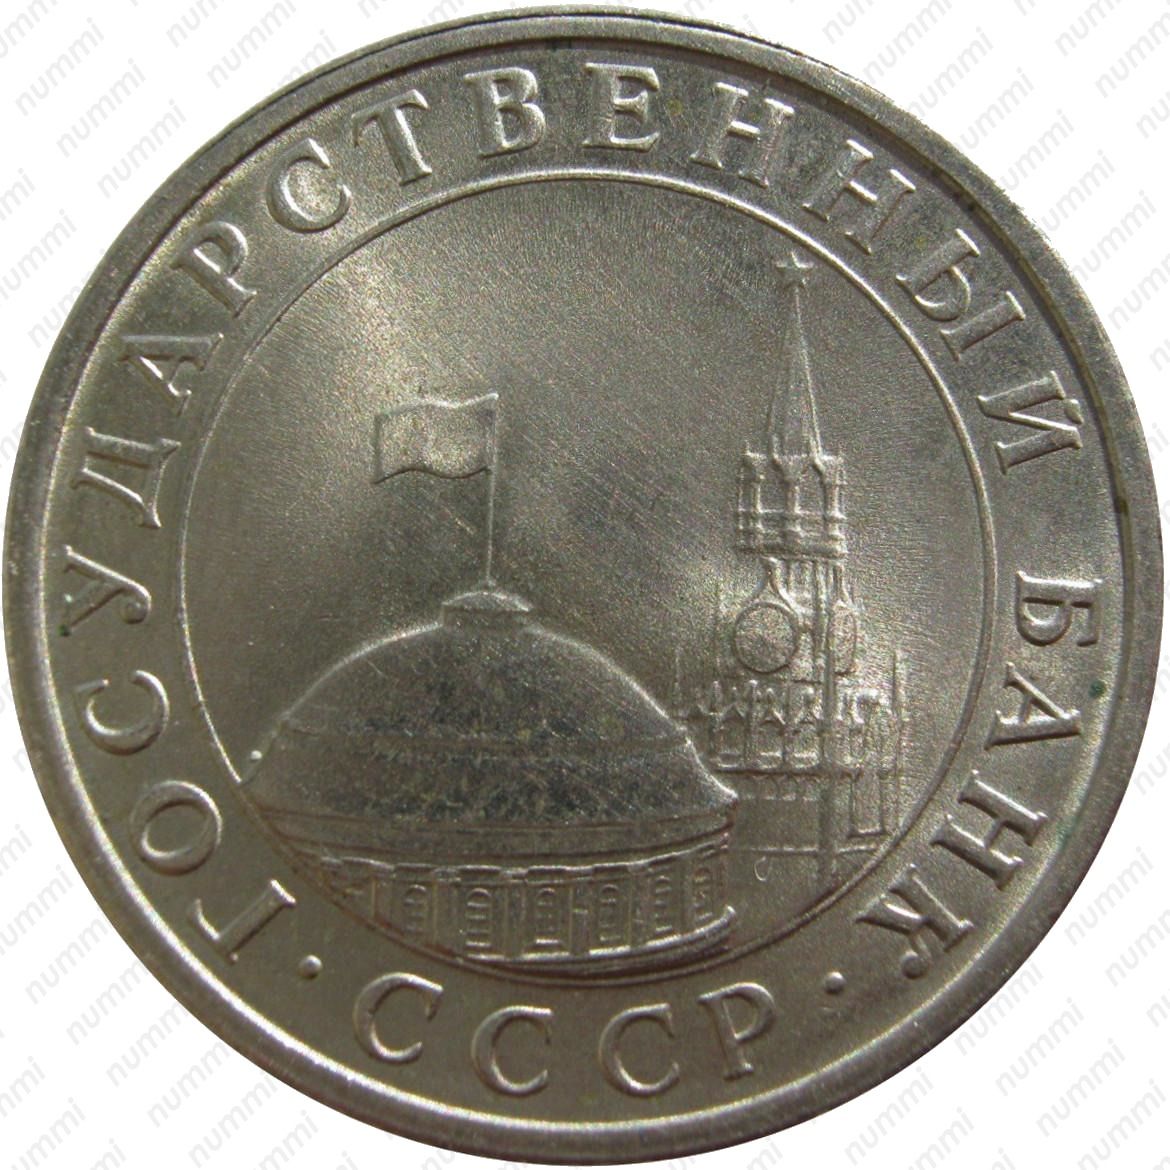 5 рубль 1991 года цена стоимость. 5 Рублей 1991 государственный банк. 5 Рублей 1991 года СССР. 5 Рублей 1991 года ЛМД. Монета Аверс 1991.